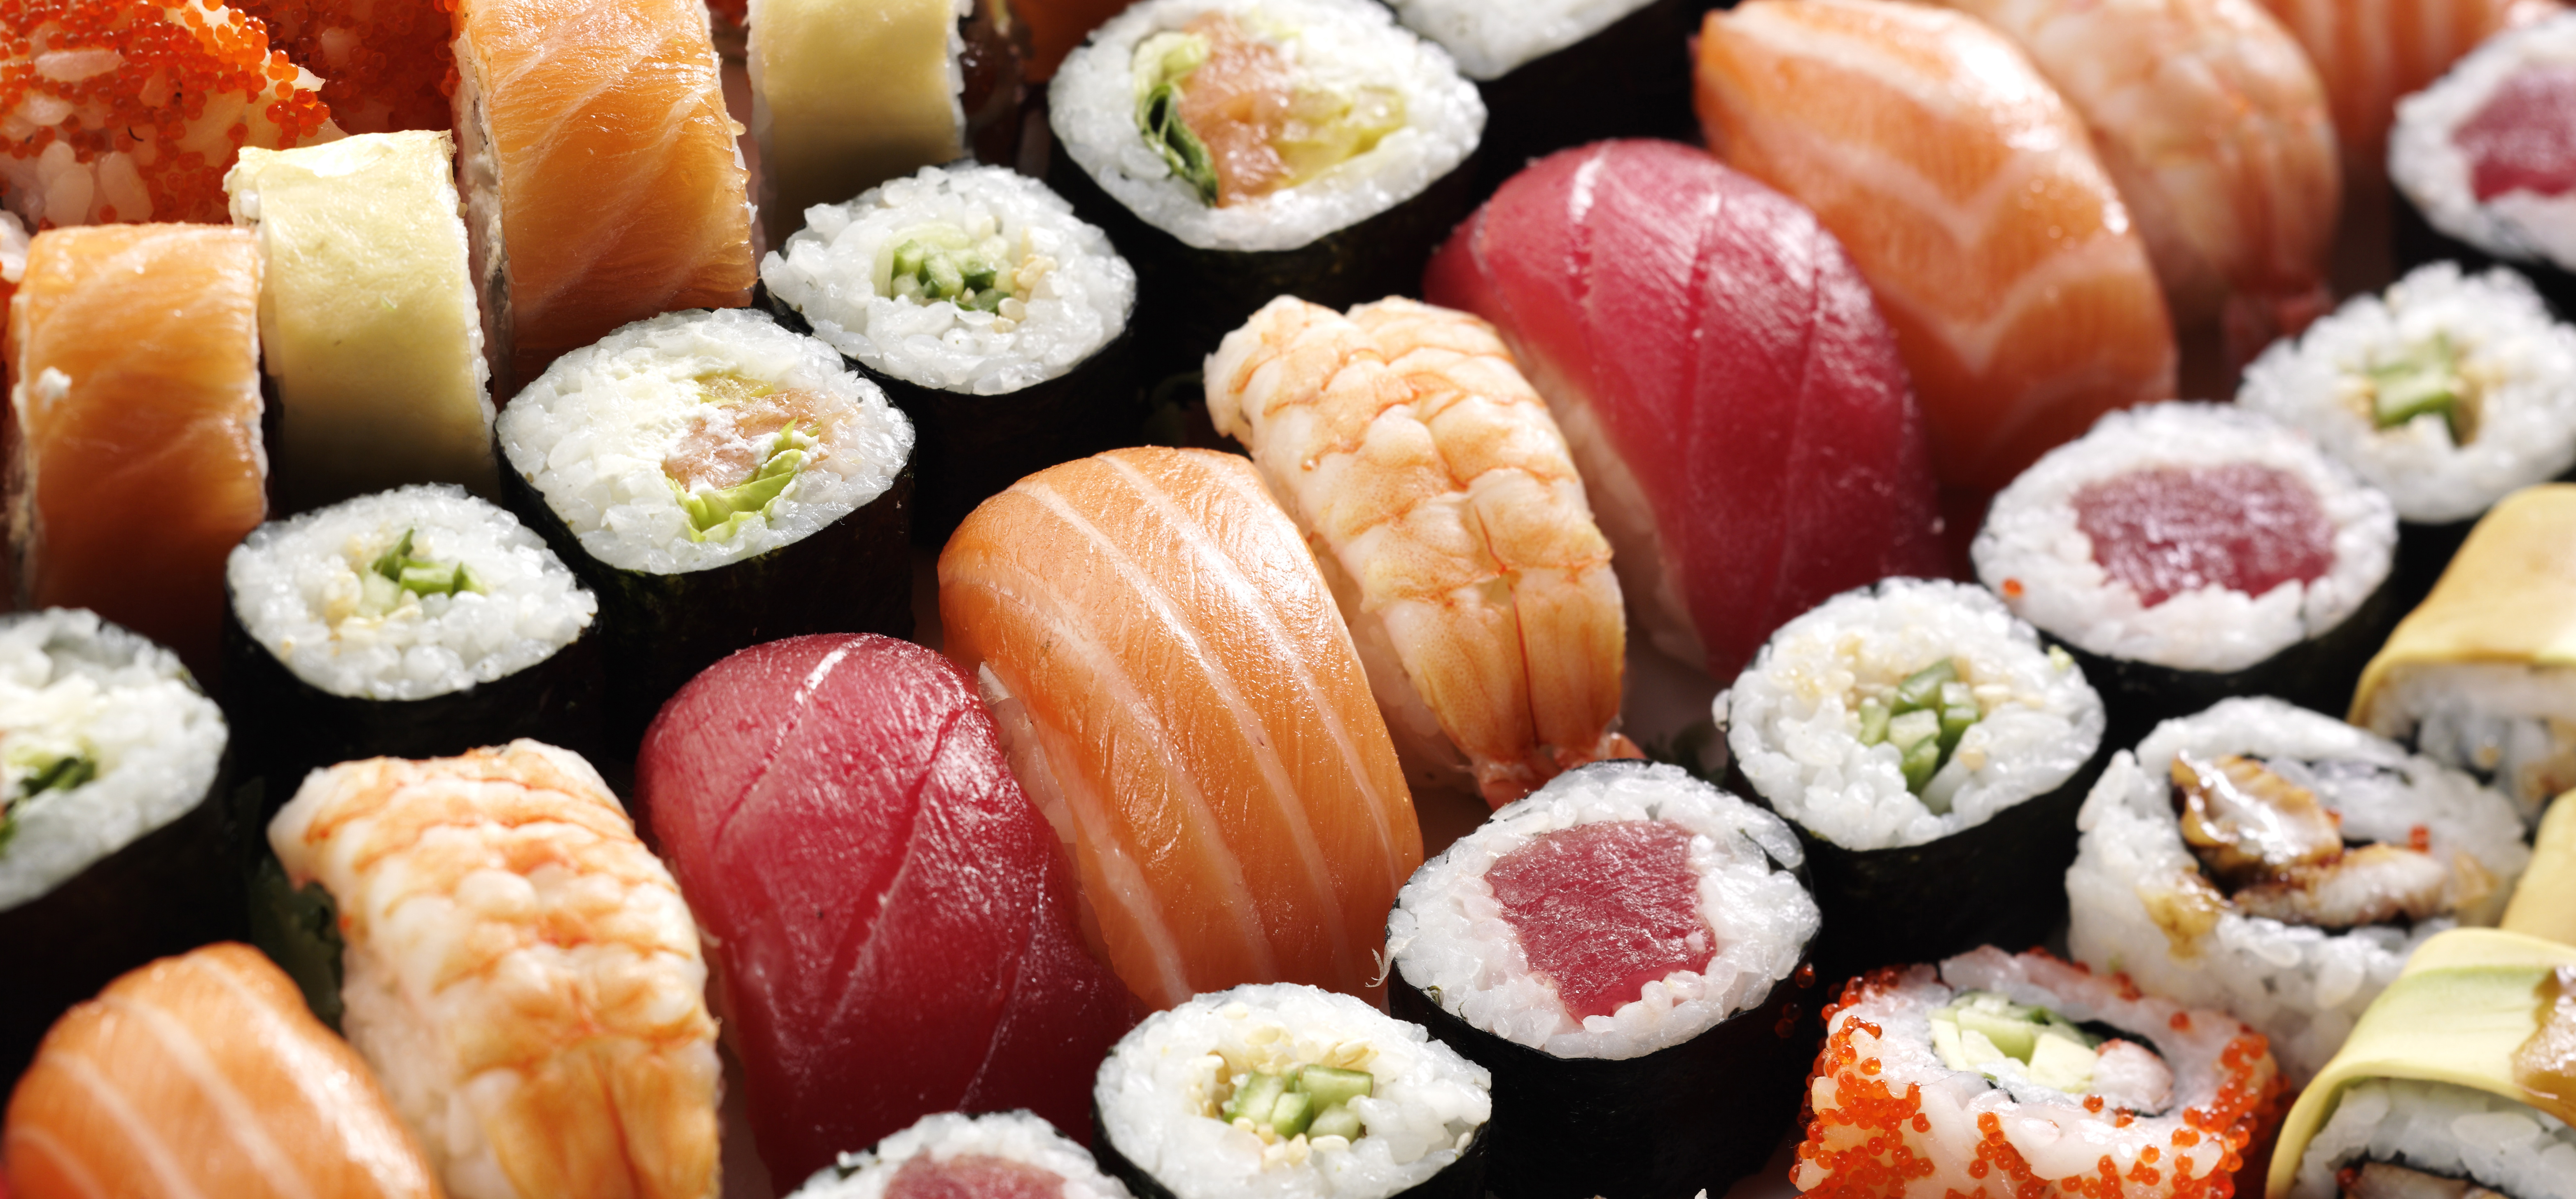 「日本料理は過大評価されている」 日本在住の外国人大学講師が英誌に寄稿 | 日本に20年以上住んだ英国人の本音